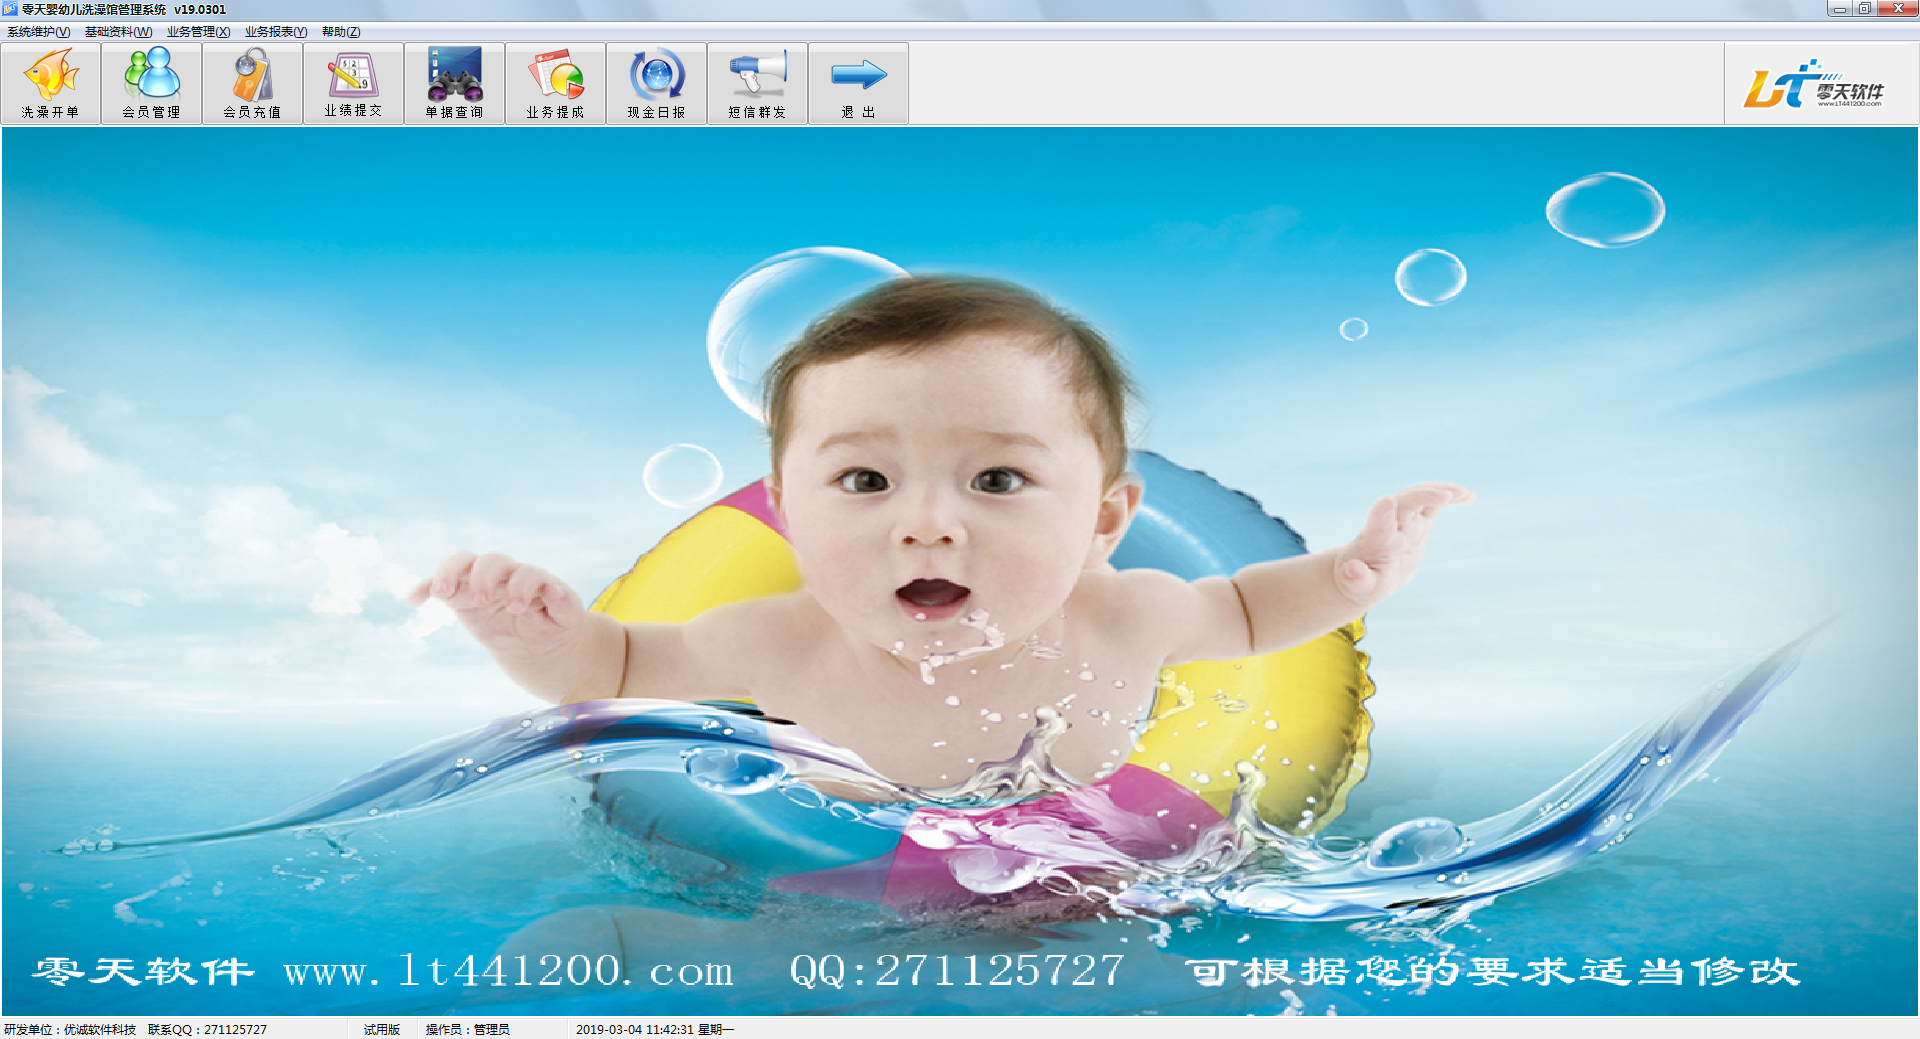 零天婴幼儿洗澡馆管理系统 V19.0301